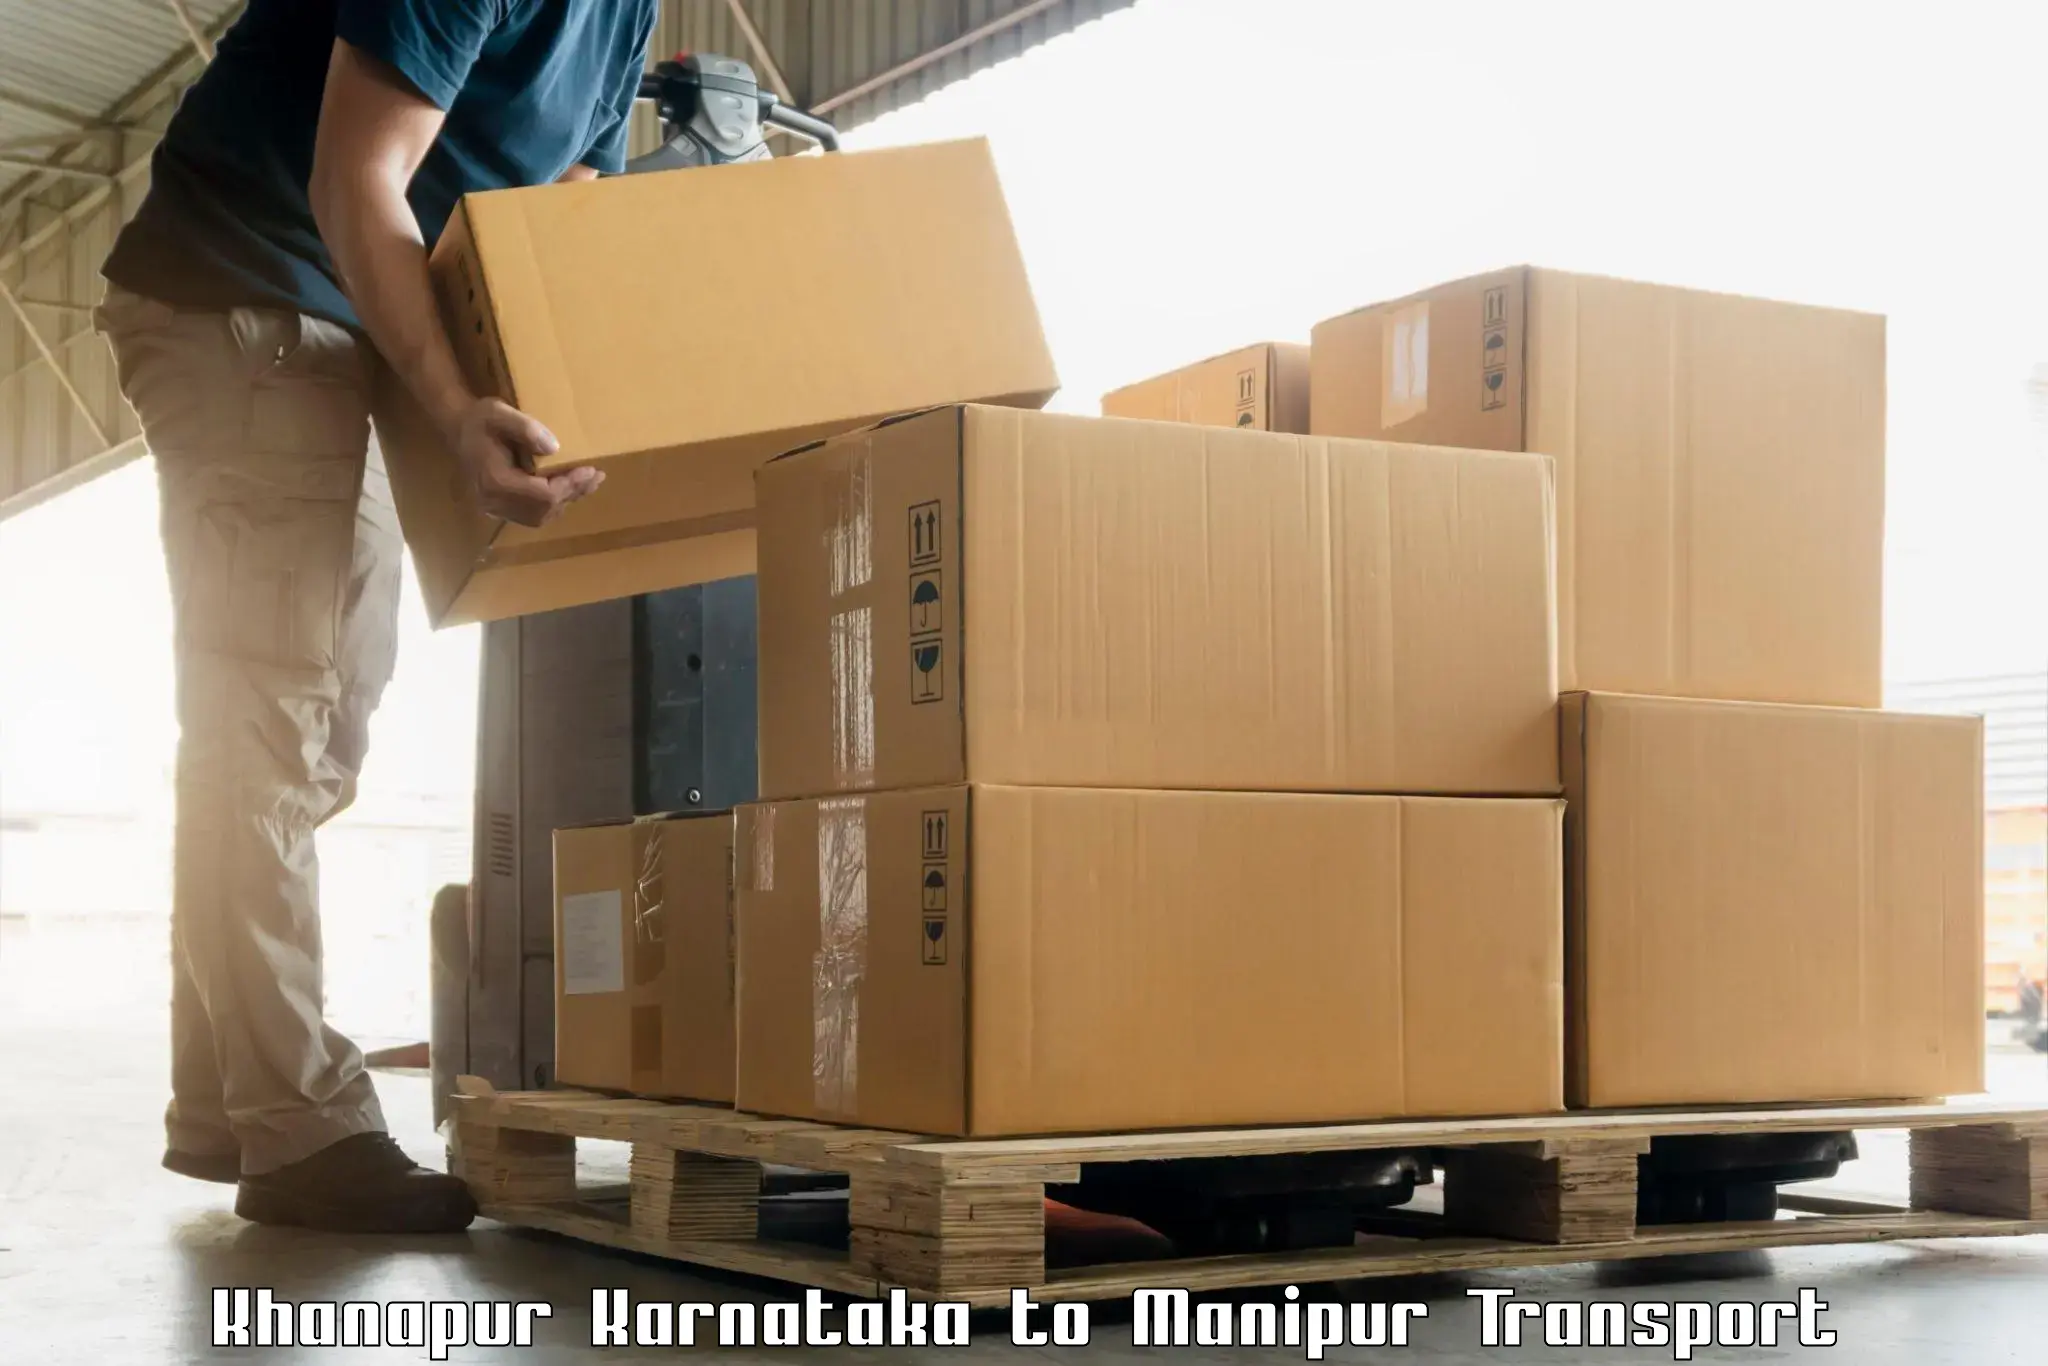 Transport shared services Khanapur Karnataka to Imphal